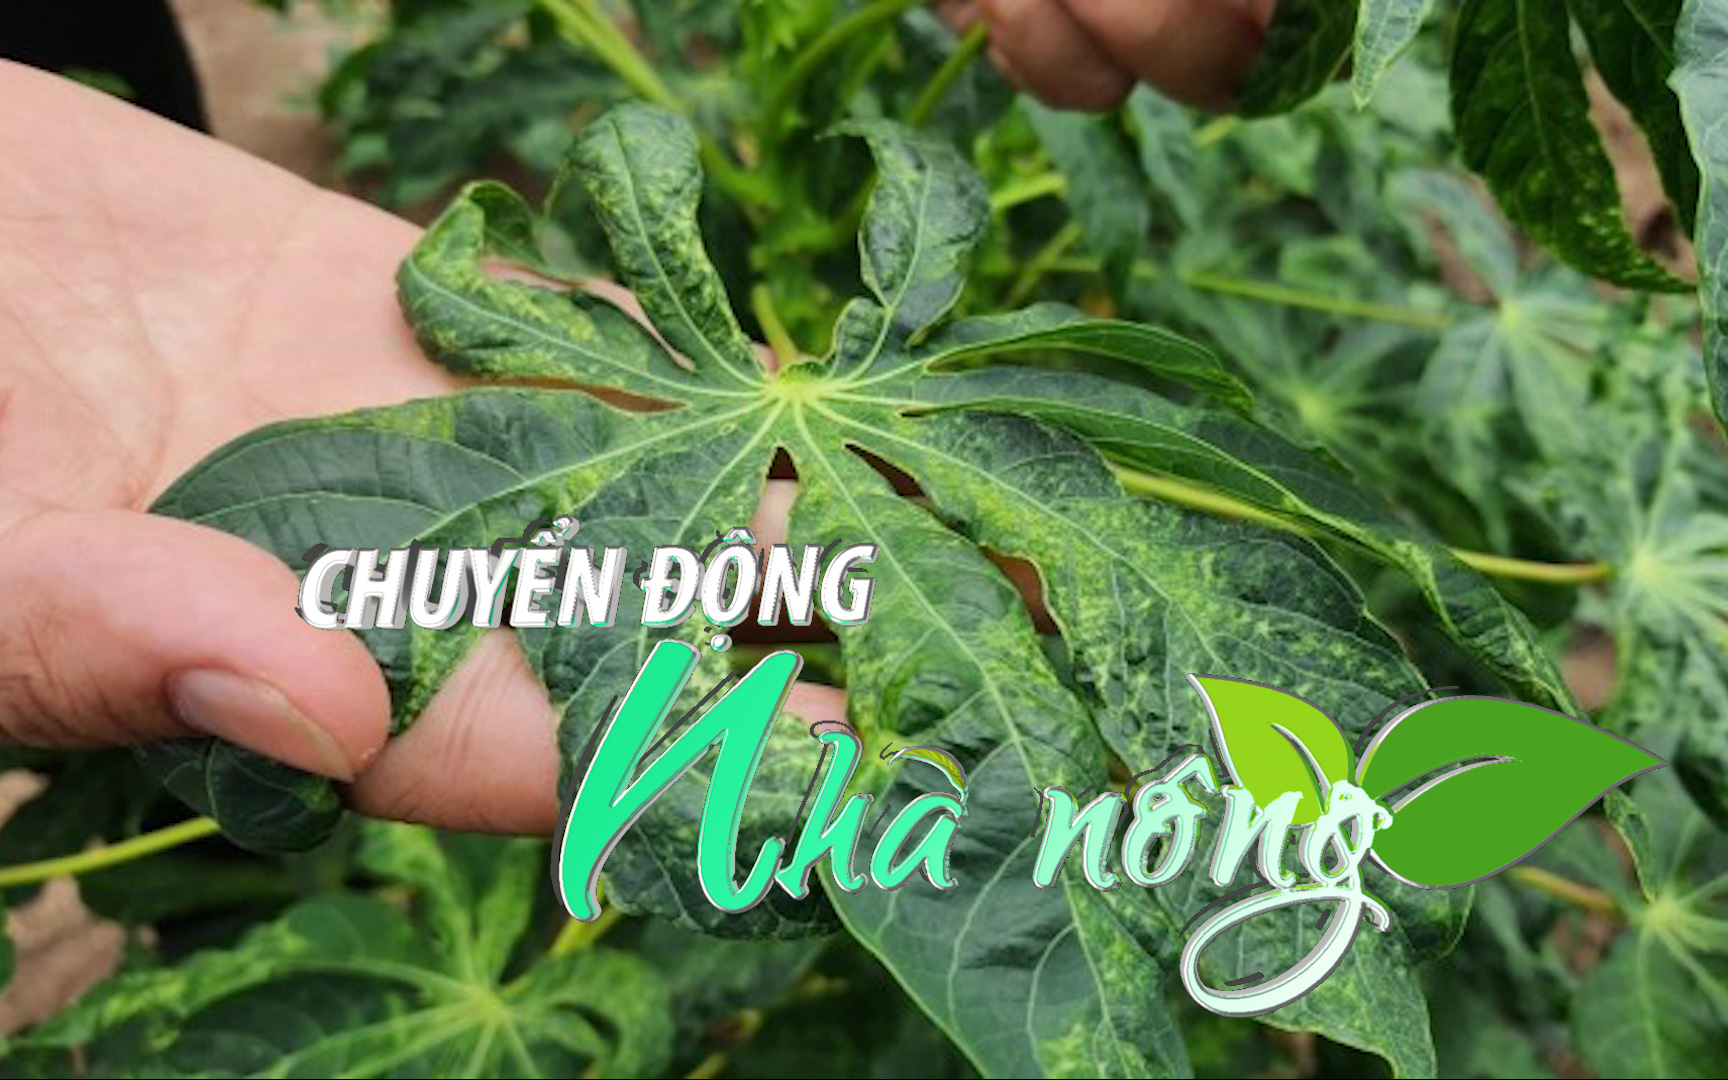 Chuyển động Nhà nông 22/4: Hàng loạt diện tích trồng sắn ở Nghệ An bị nhiễm bệnh khảm lá